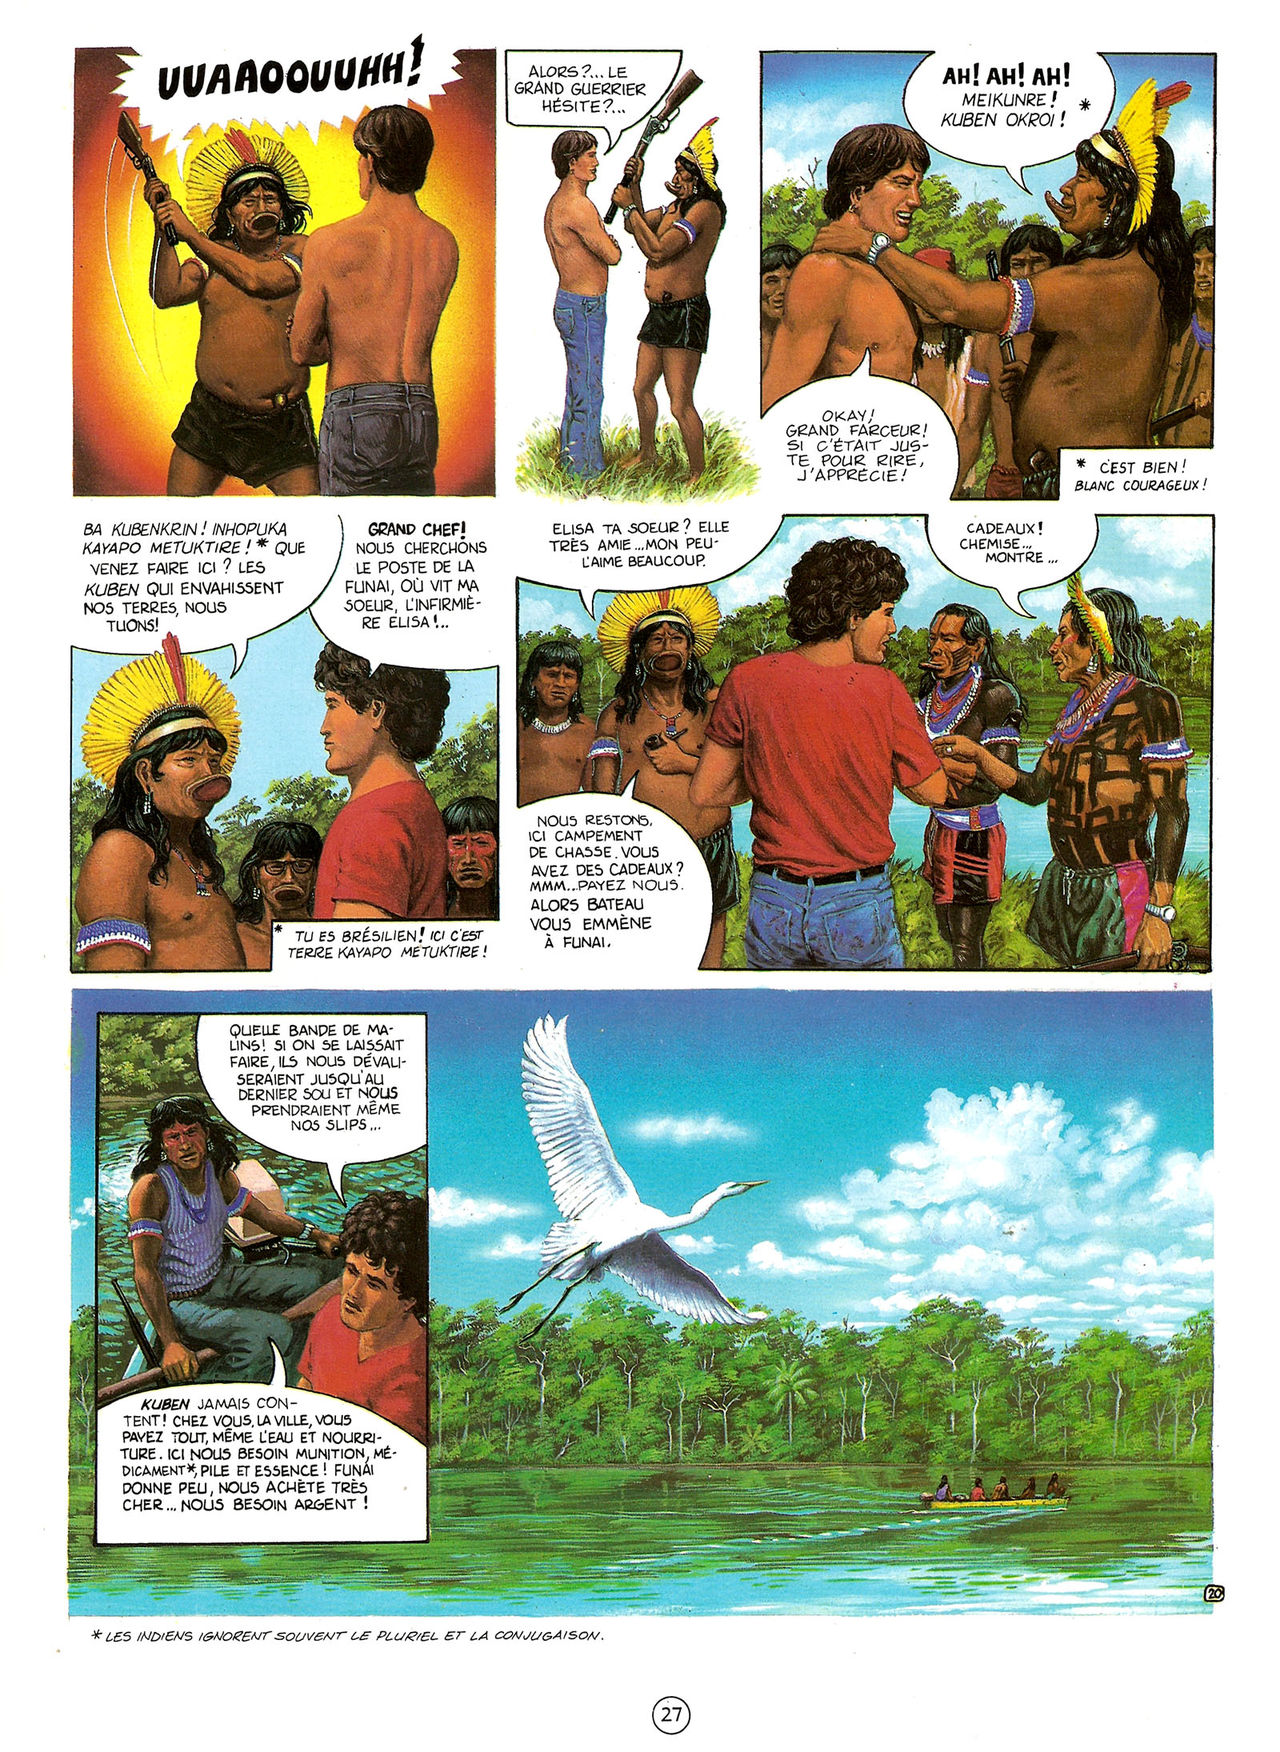 Les Aventures de Vic Voyage 05 - Brazil! numero d'image 27